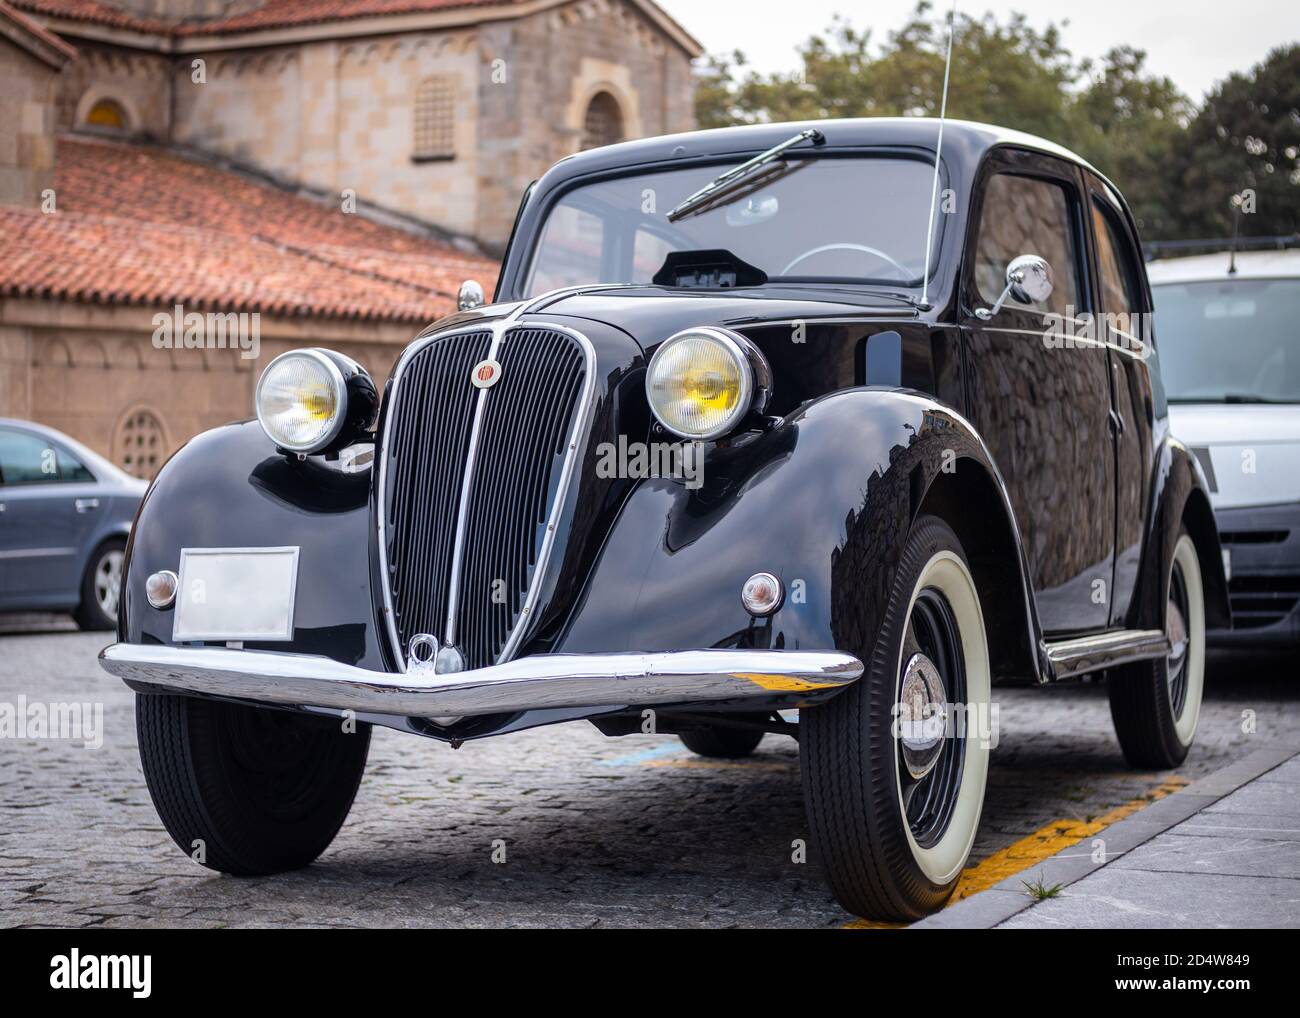 Spanien; Sep 2020: Italienischer Klassiker Fiat 500 Topolino. Ikonisches schwarzes Oldtimer auf der Straße geparkt. Gelbe Rundlichter, weiße Räder, Chromspiegel A Stockfoto